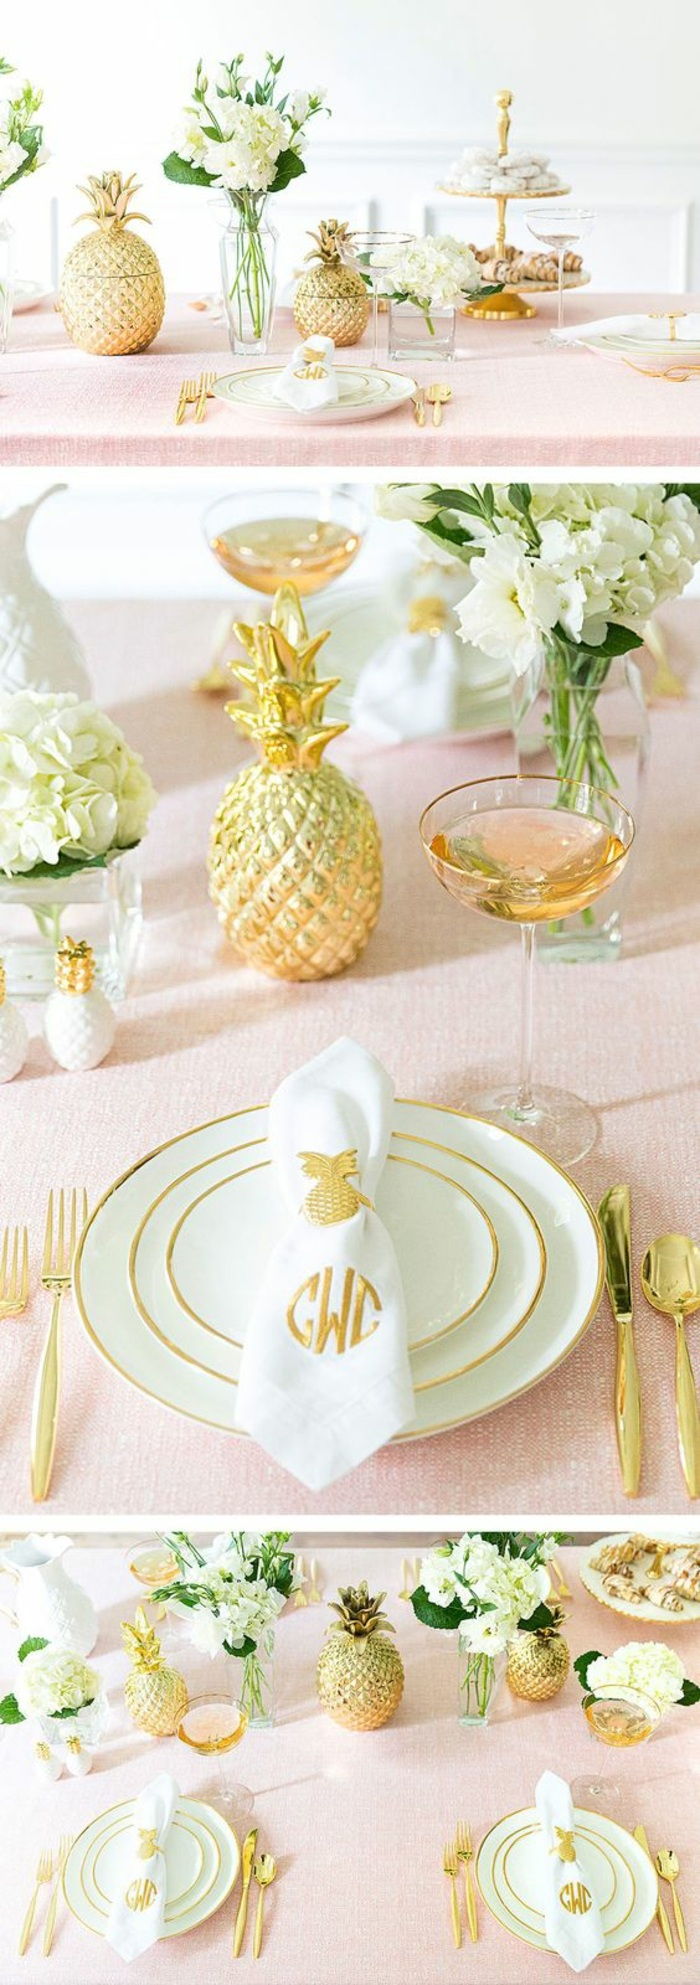 praznična okrasna miza, dekoracija mize v roza, bela in zlata, ananas, zlati jedilni pribor